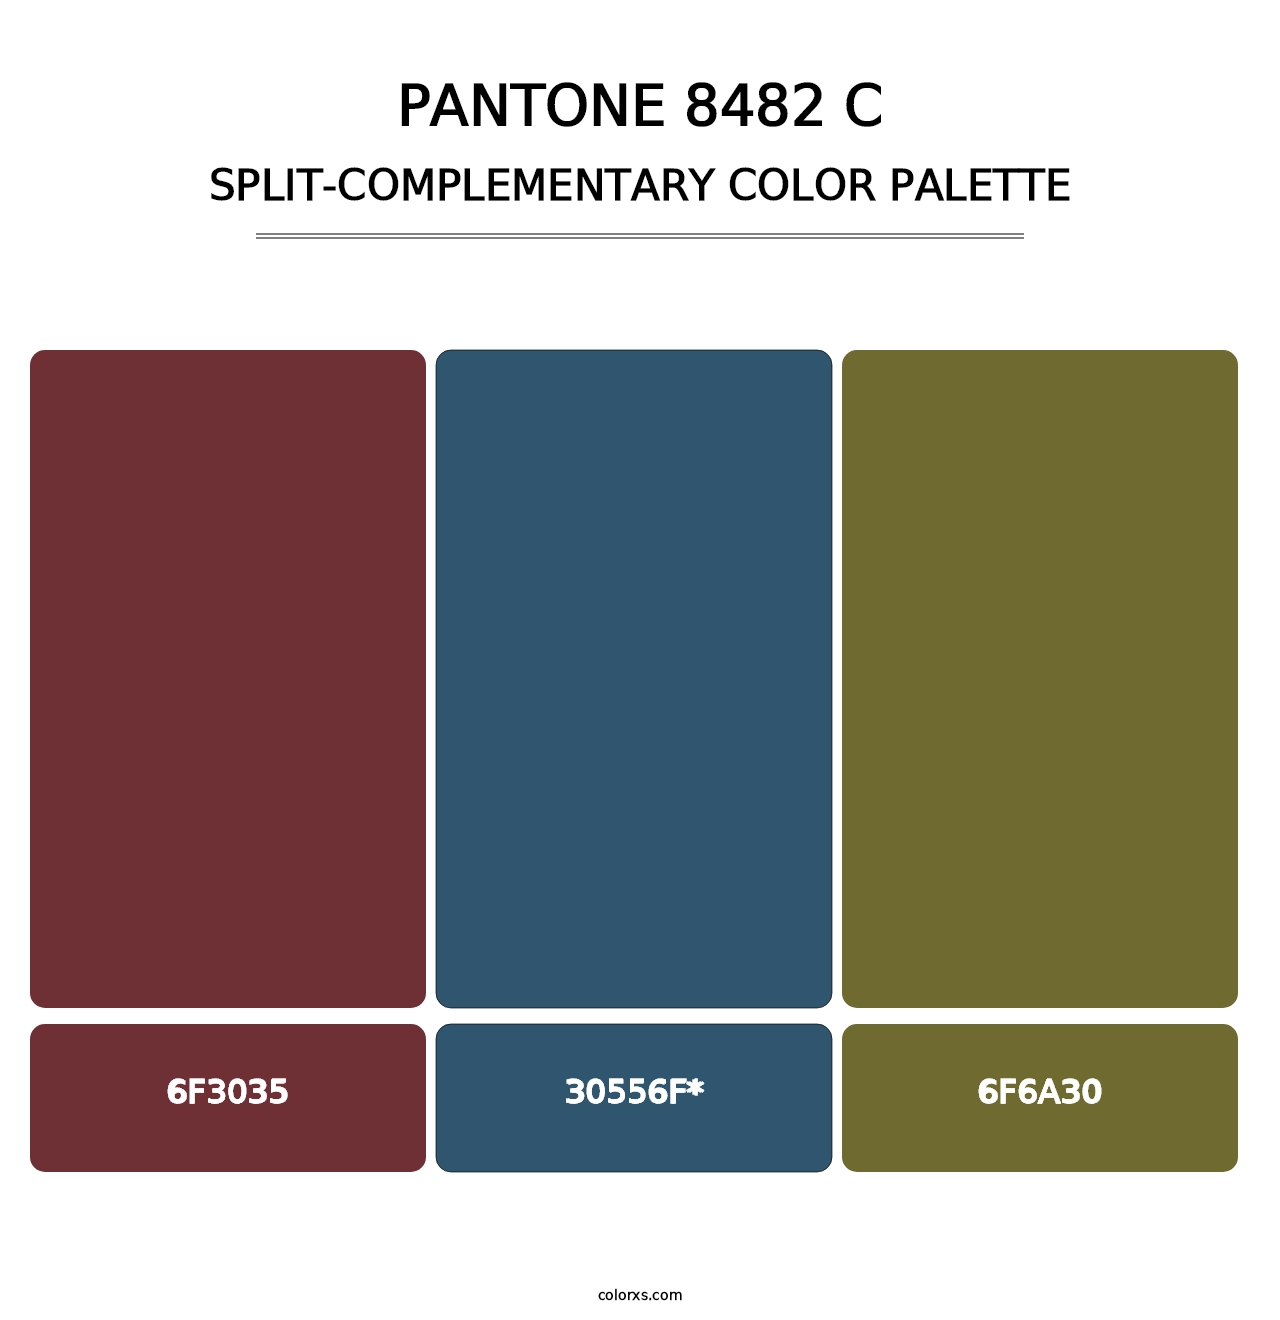 PANTONE 8482 C - Split-Complementary Color Palette